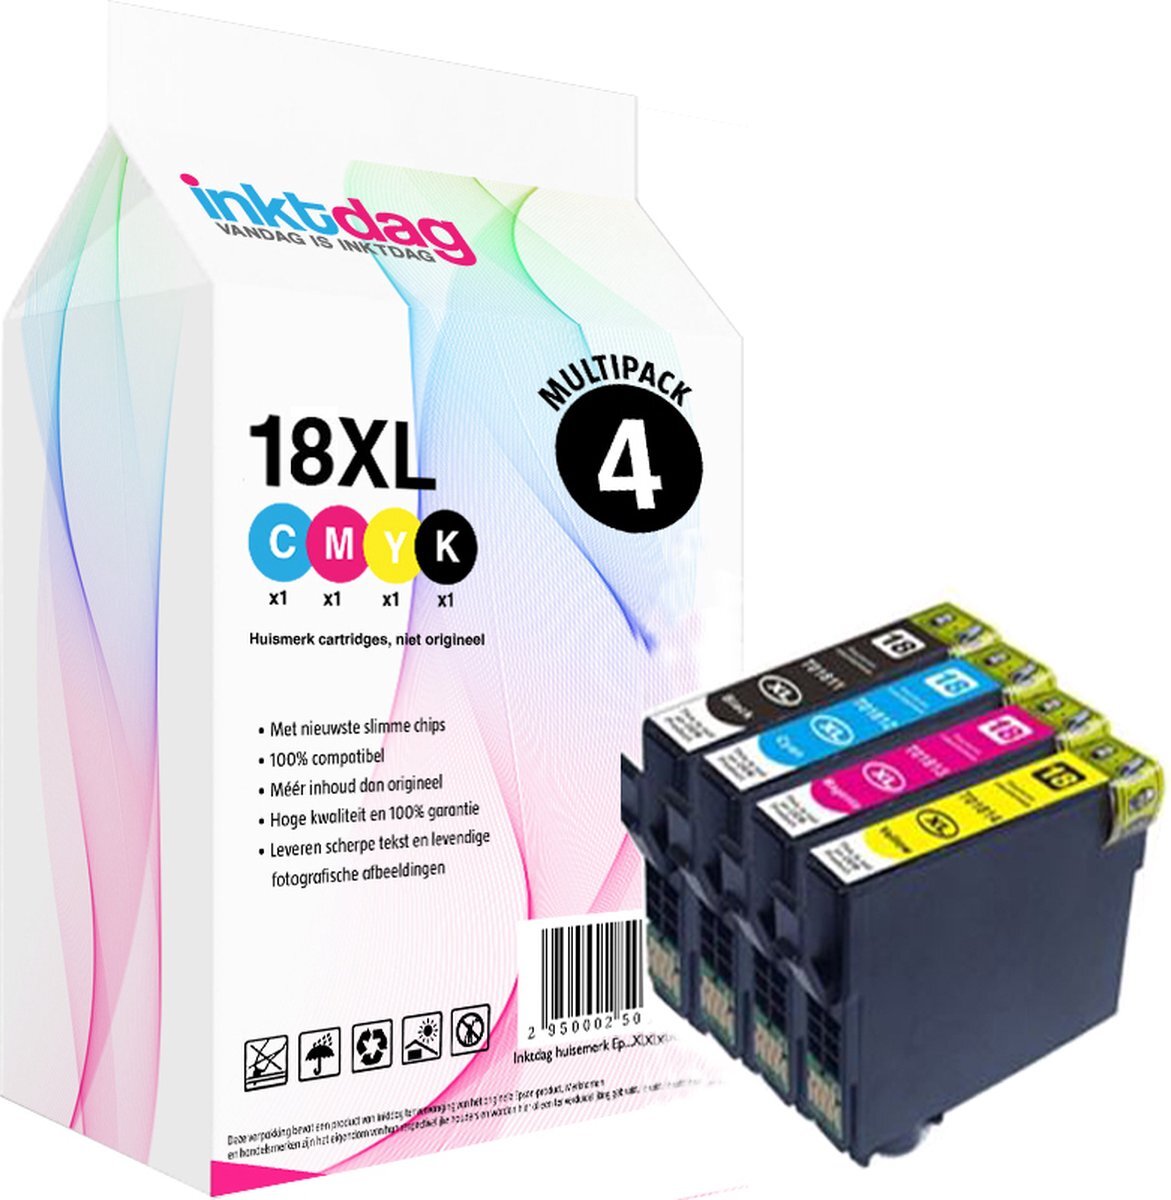 inktdag inktcartridge voor Epson 18XL multipack van 4 kleuren voor Epson Expression Home XP202, XP205, XP30, XP302, XP305, XP402, XP405, XP412, XP415, XP315, XP312, XP215, XP212, XP225, XP322, XP422, XP425, XP325, XP222